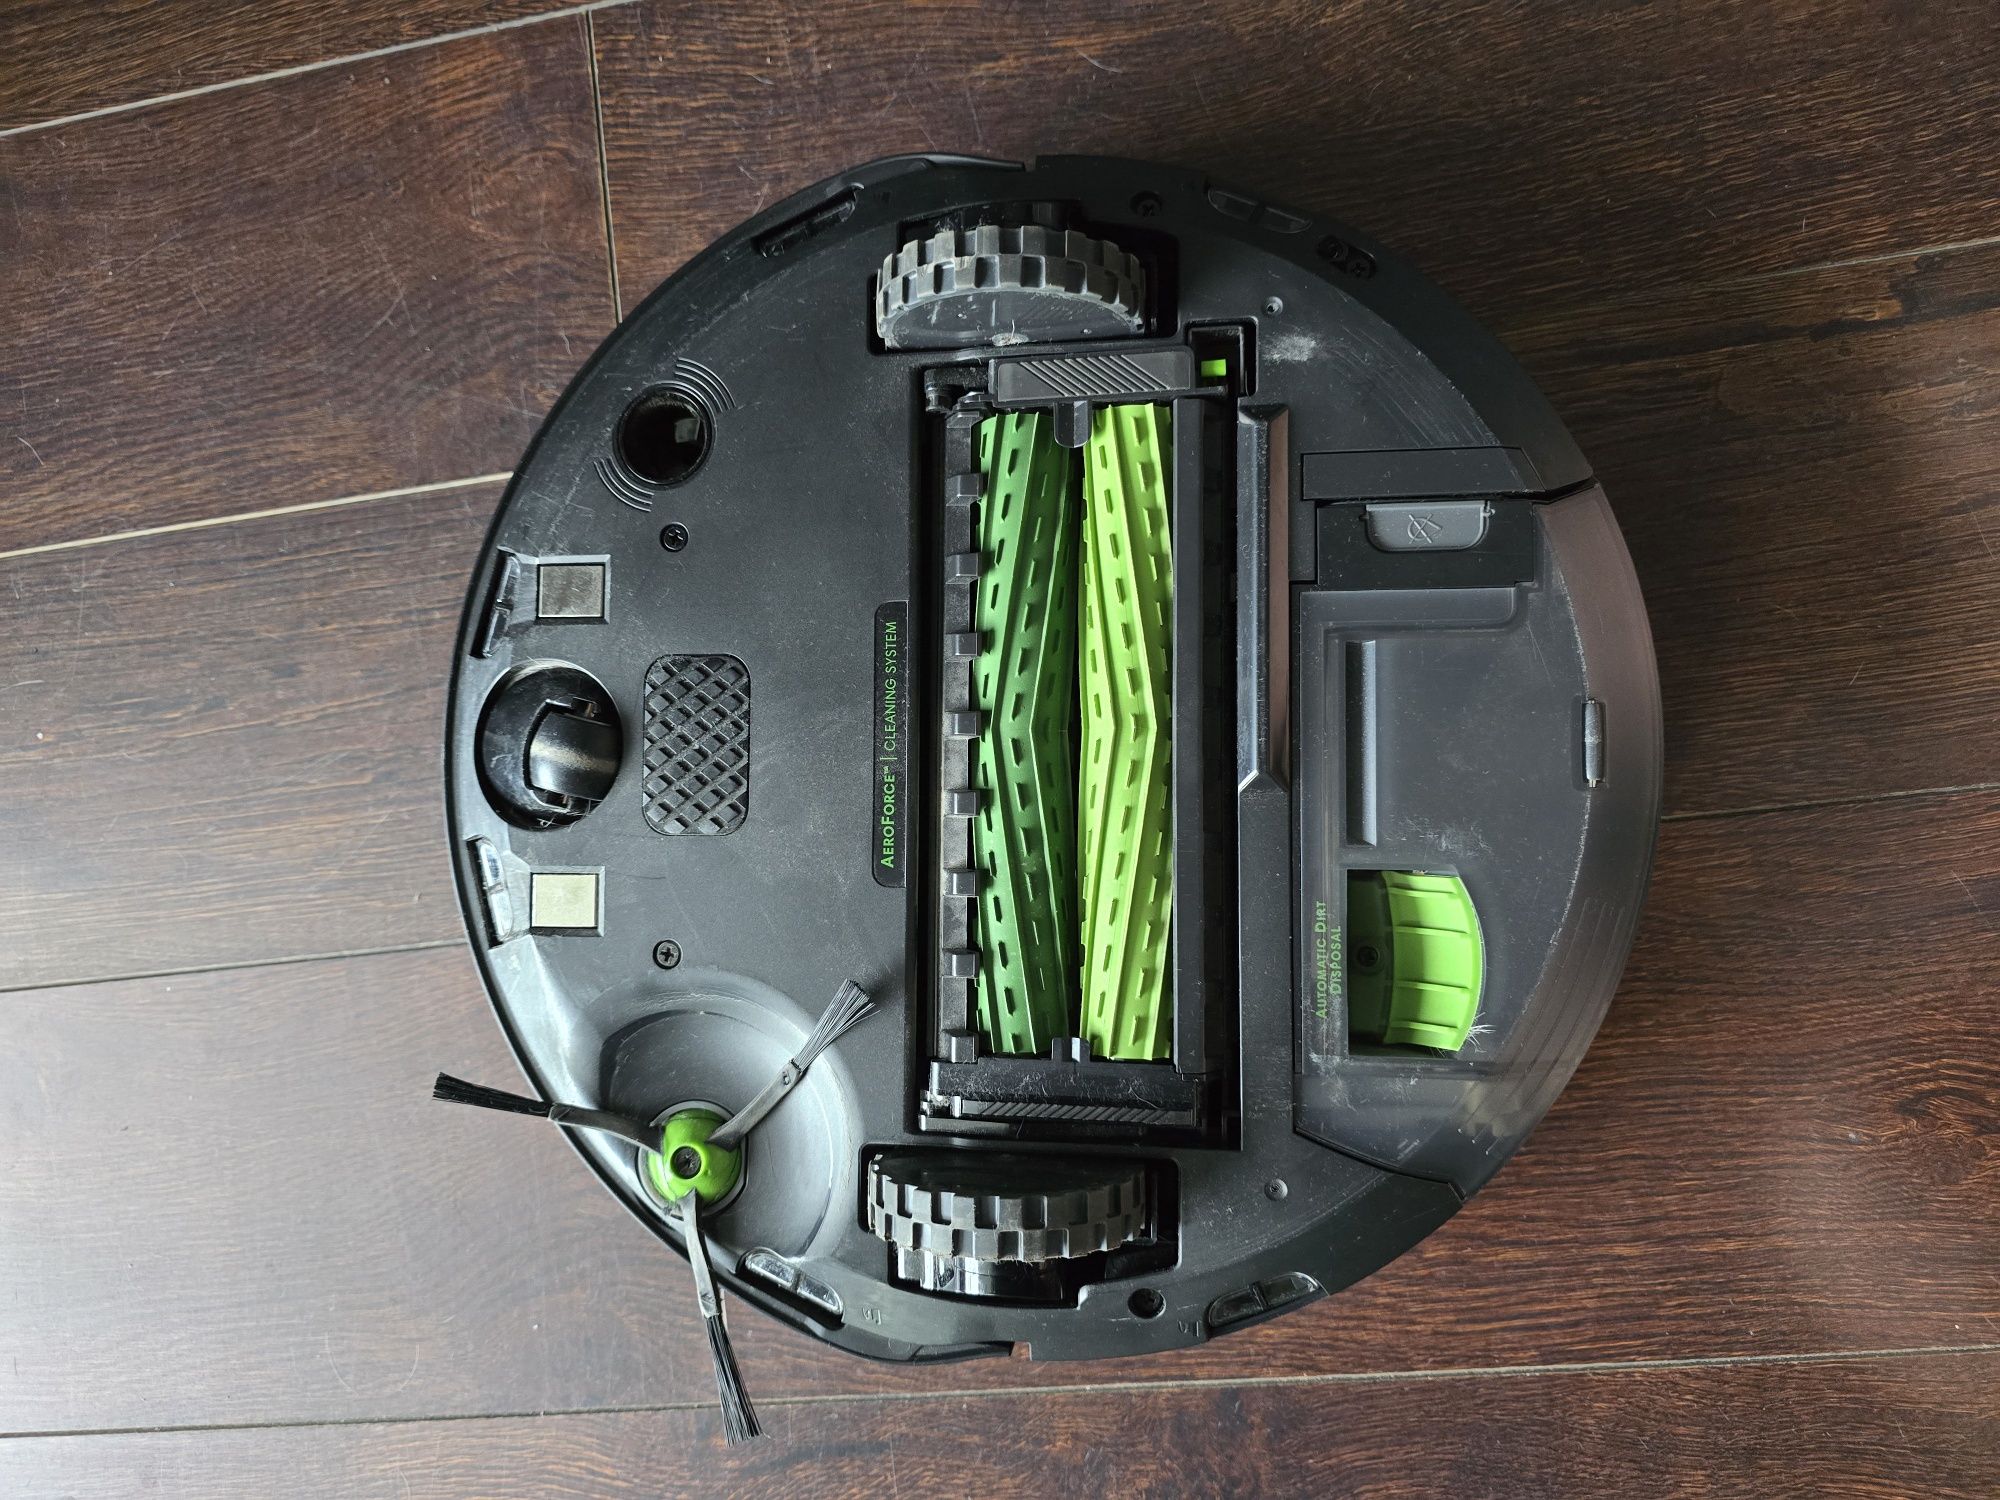 Robót sprzątający Irobot Roomba J7+